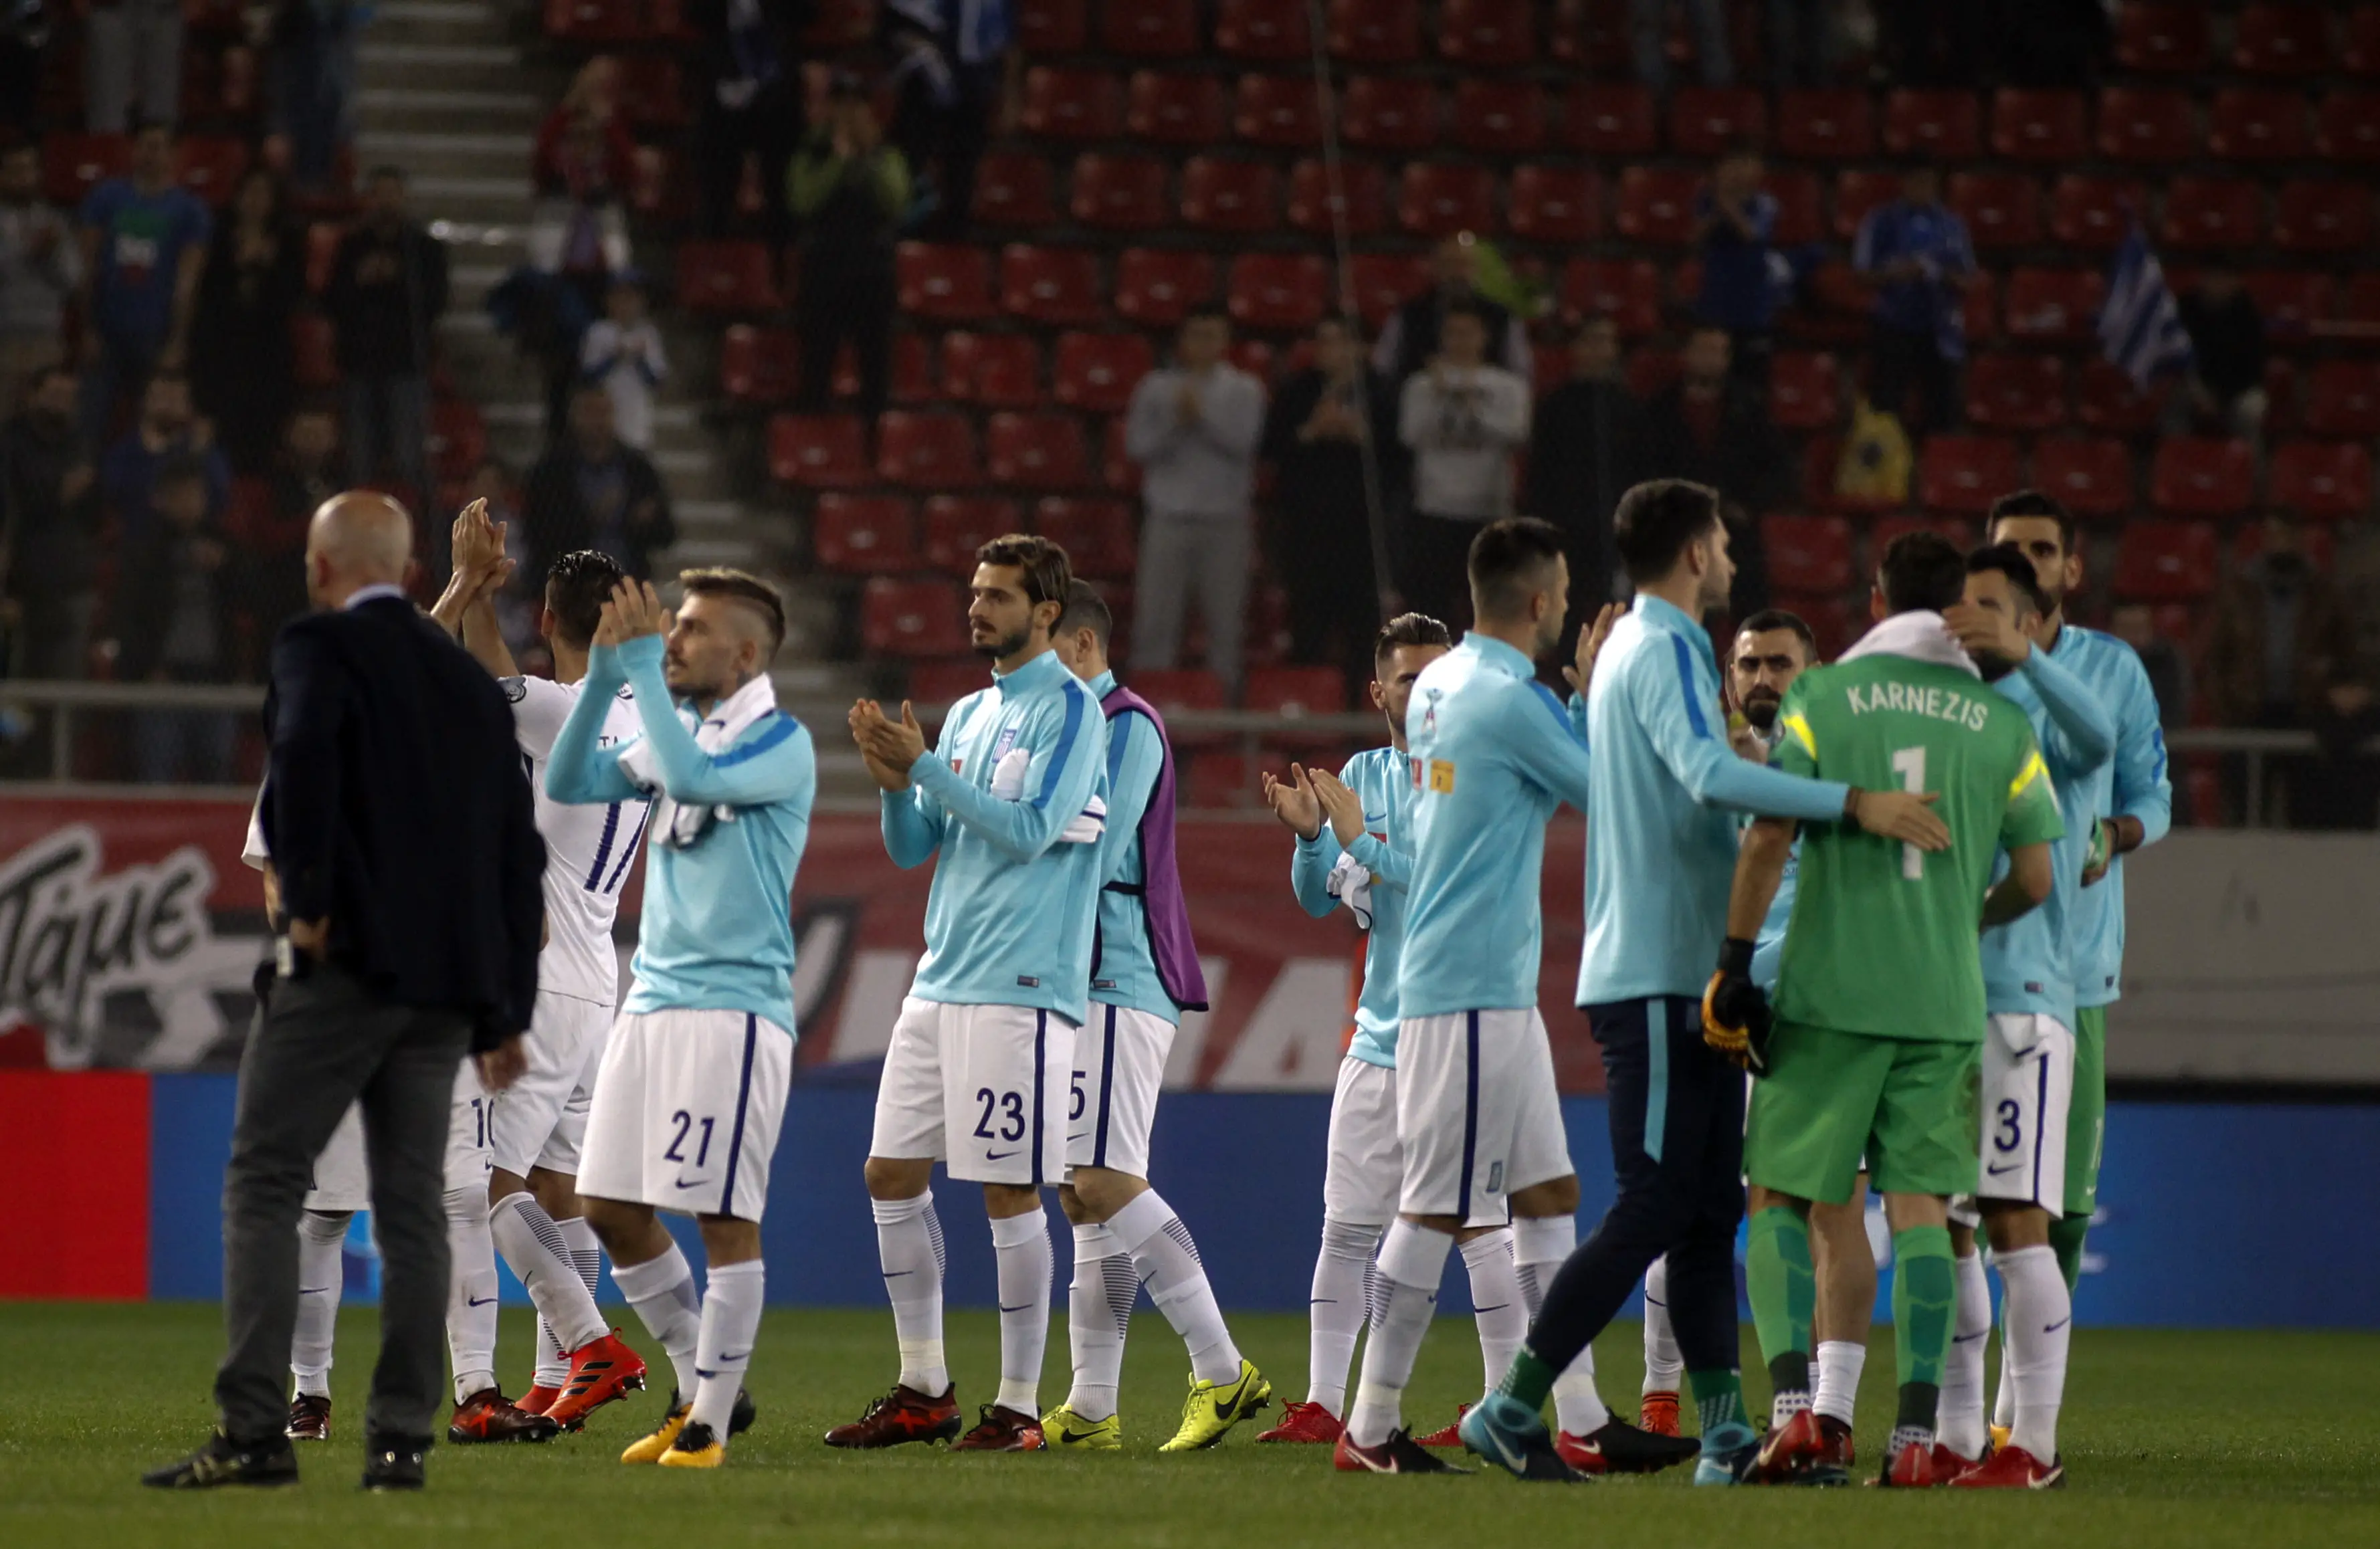 Griechenland verpasst Qualifikation für Fußball-WM in Russland